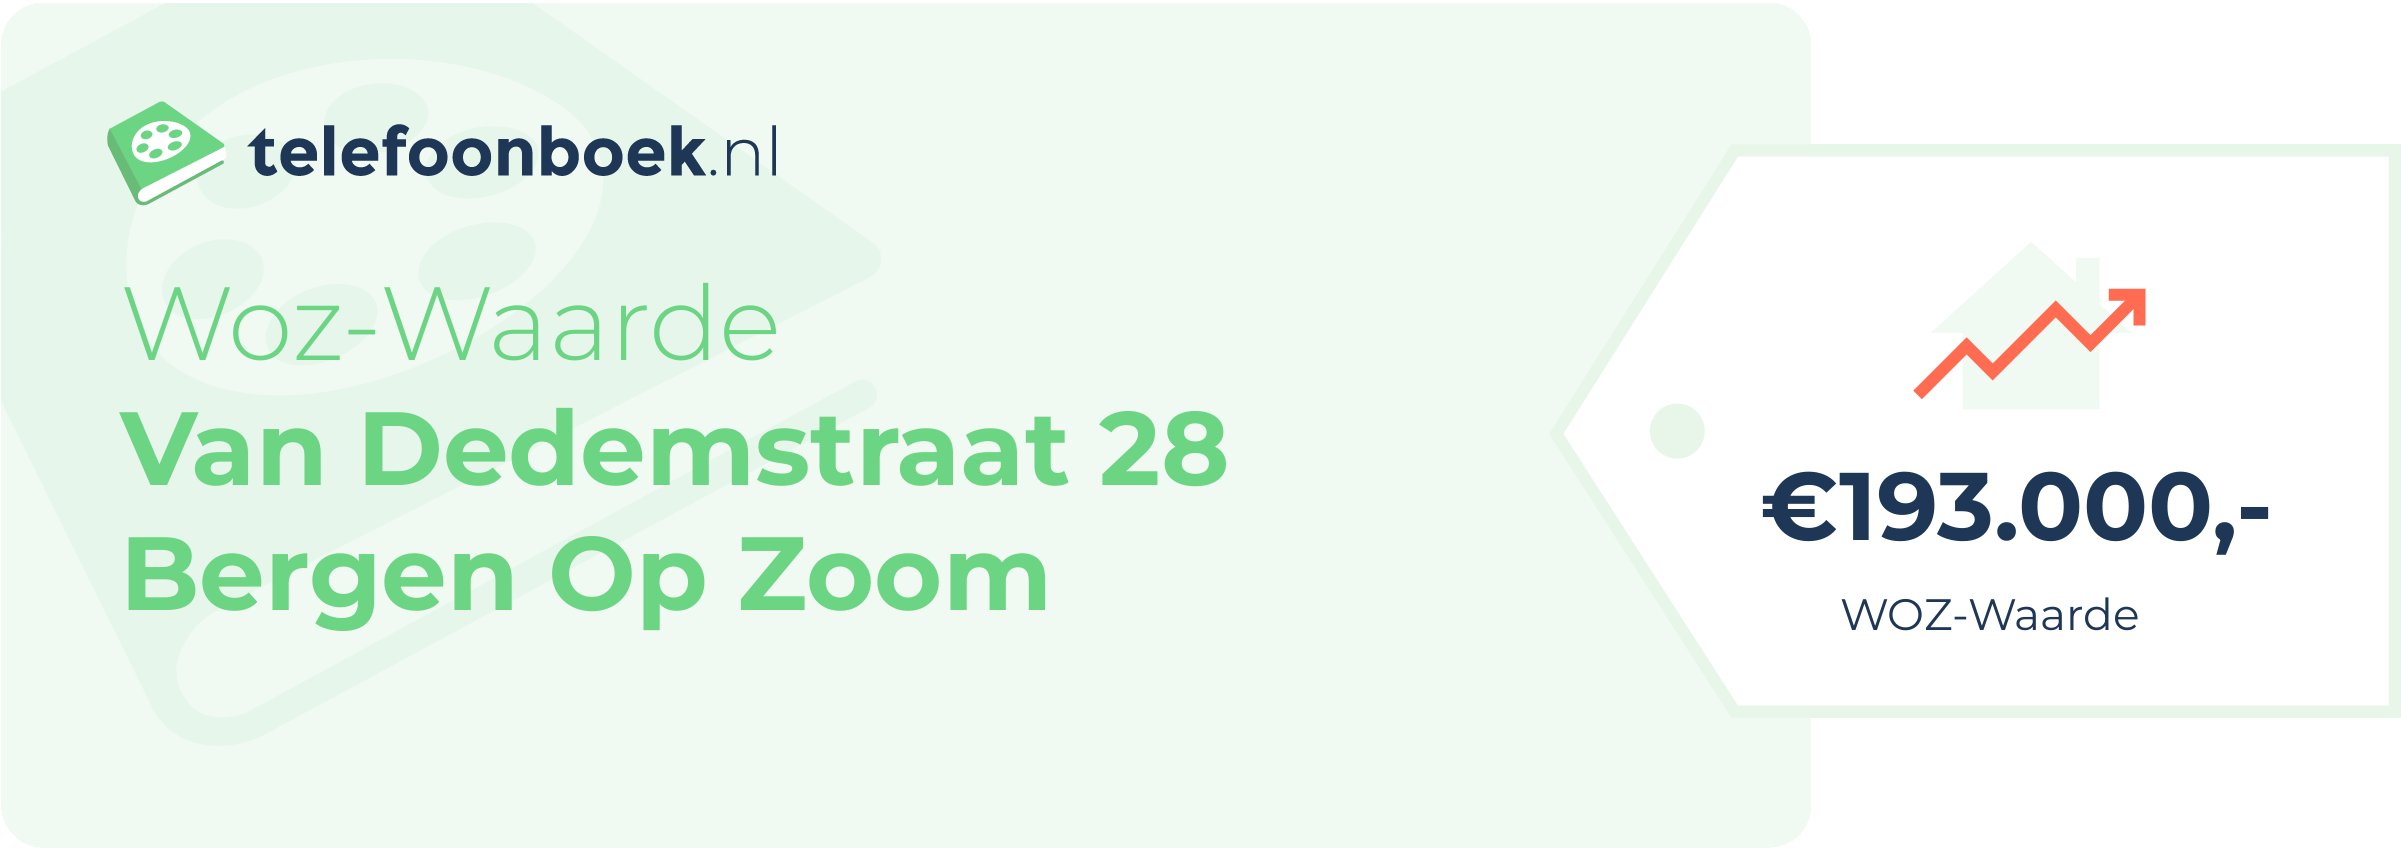 WOZ-waarde Van Dedemstraat 28 Bergen Op Zoom